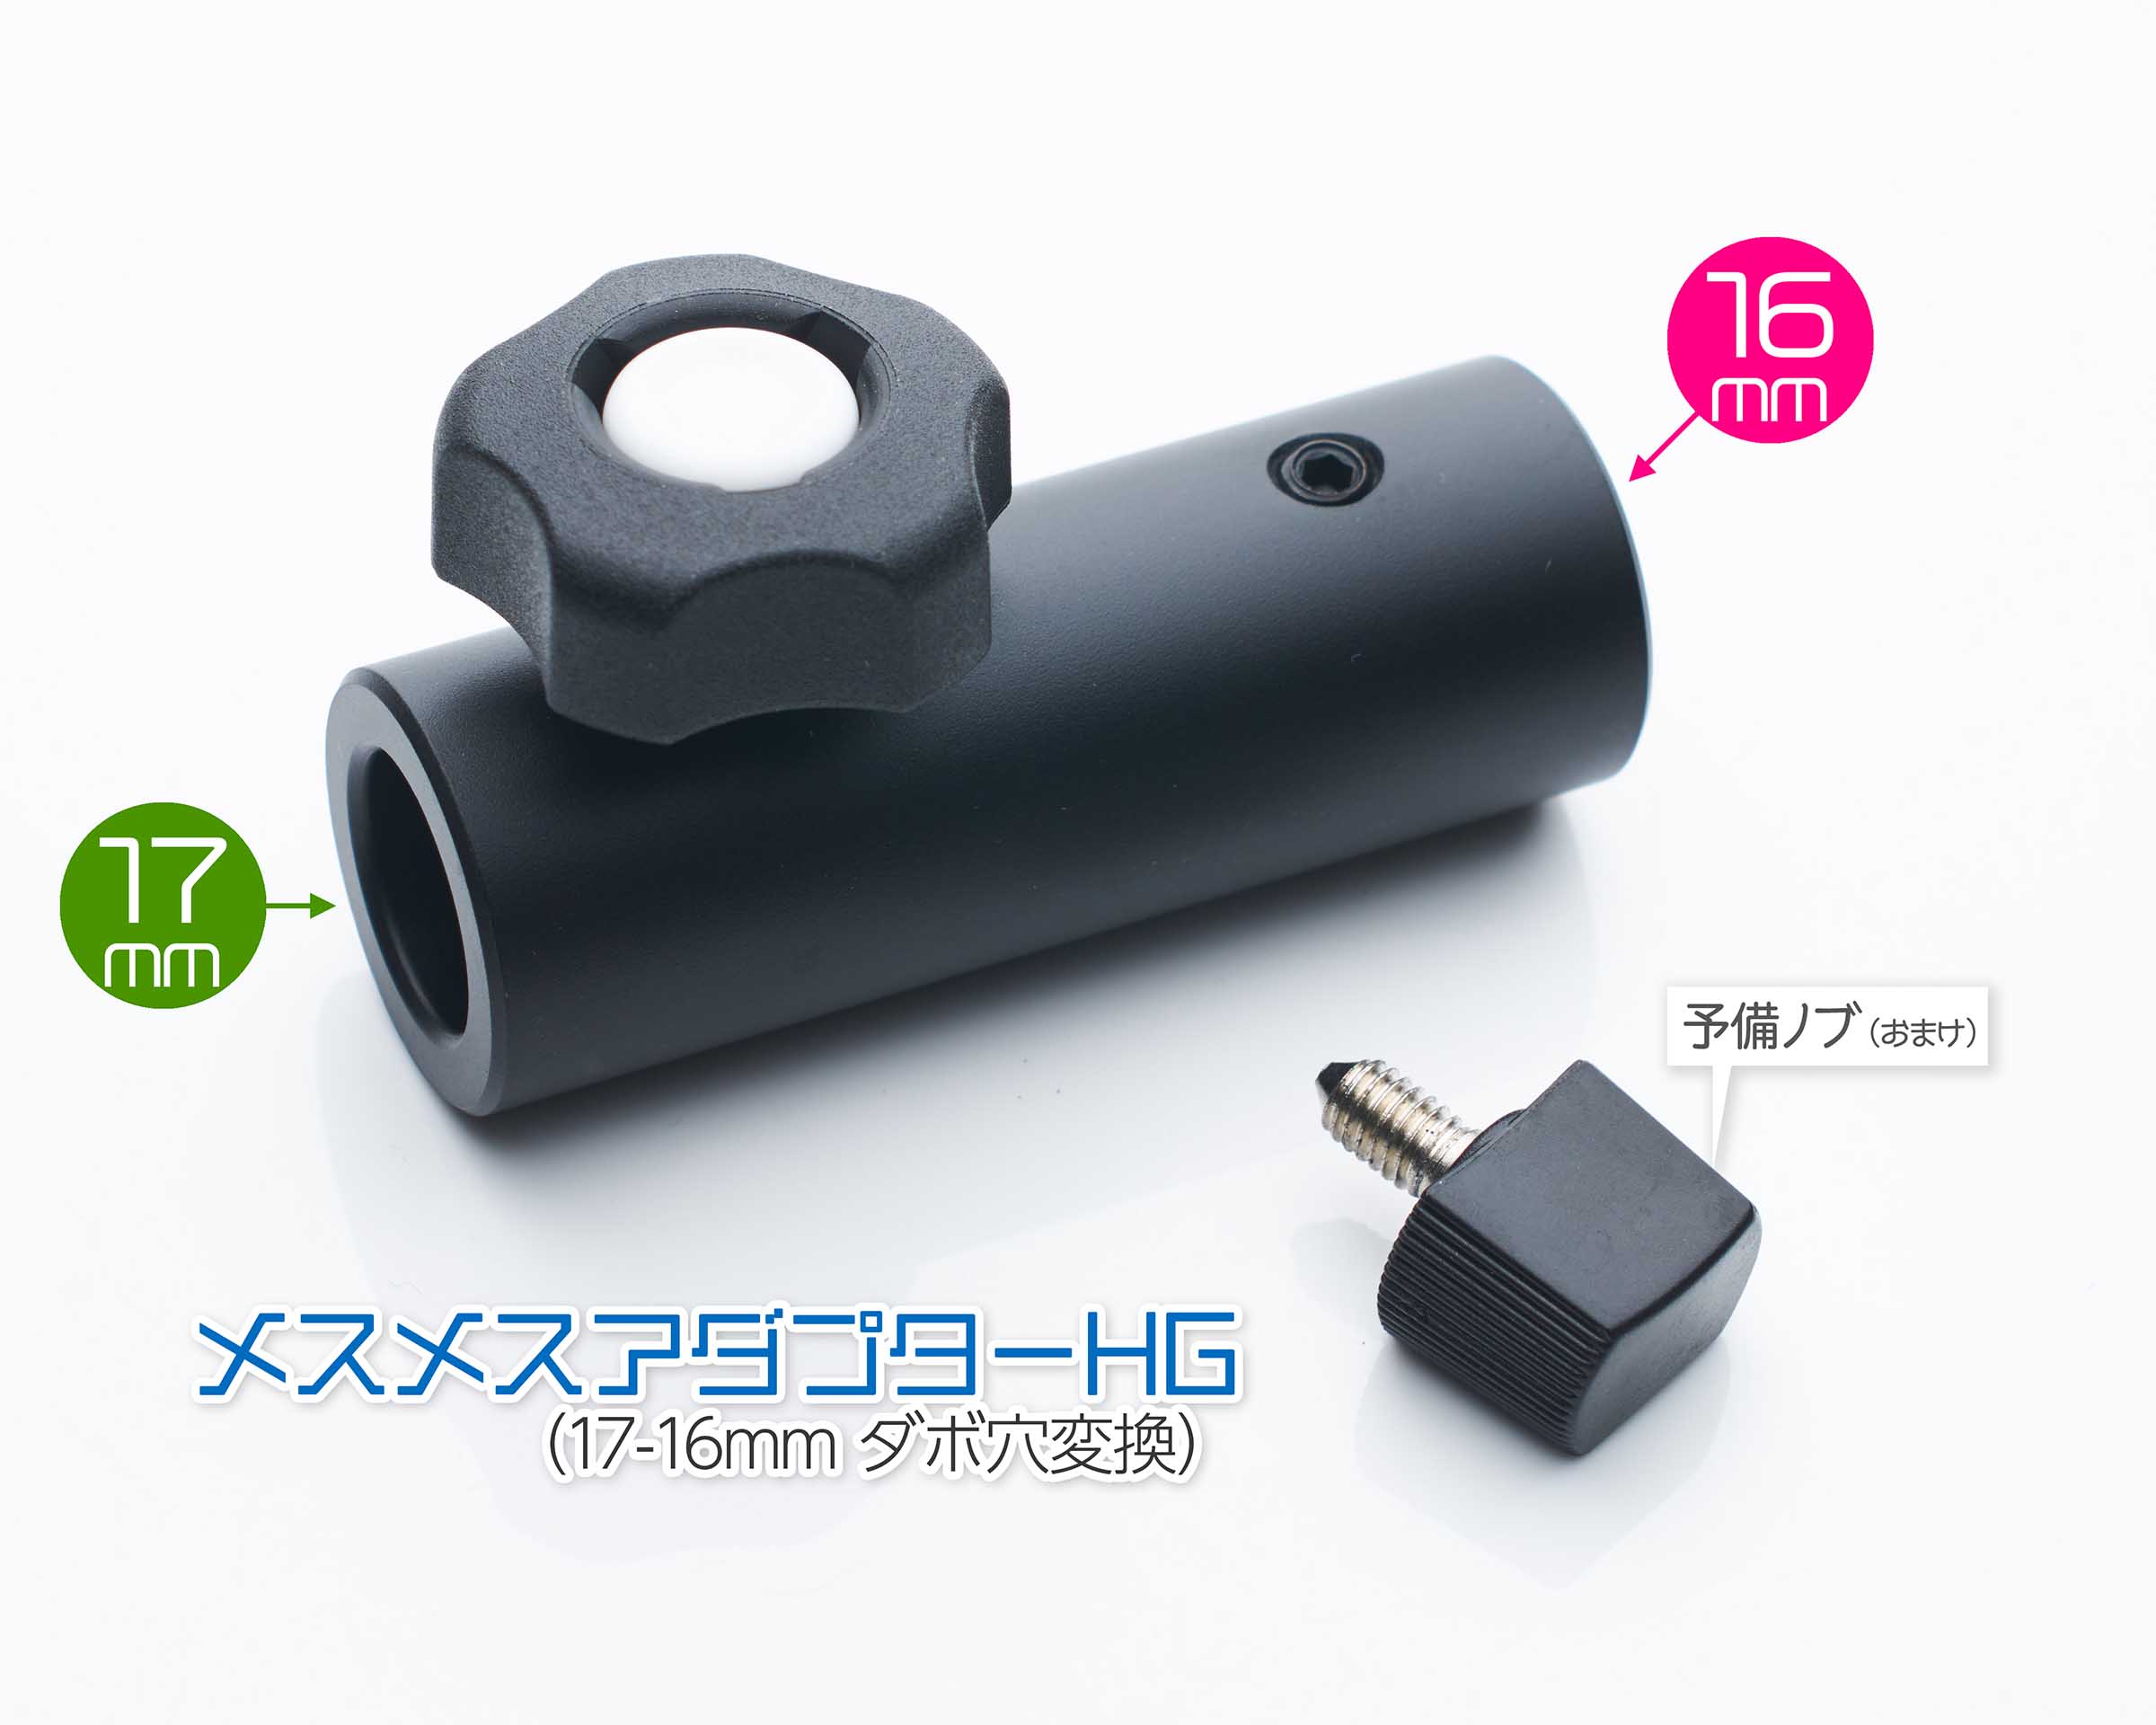 日本で一般的な「17mmオスダボ照明機材（陰謀?）」を使うための大切な 